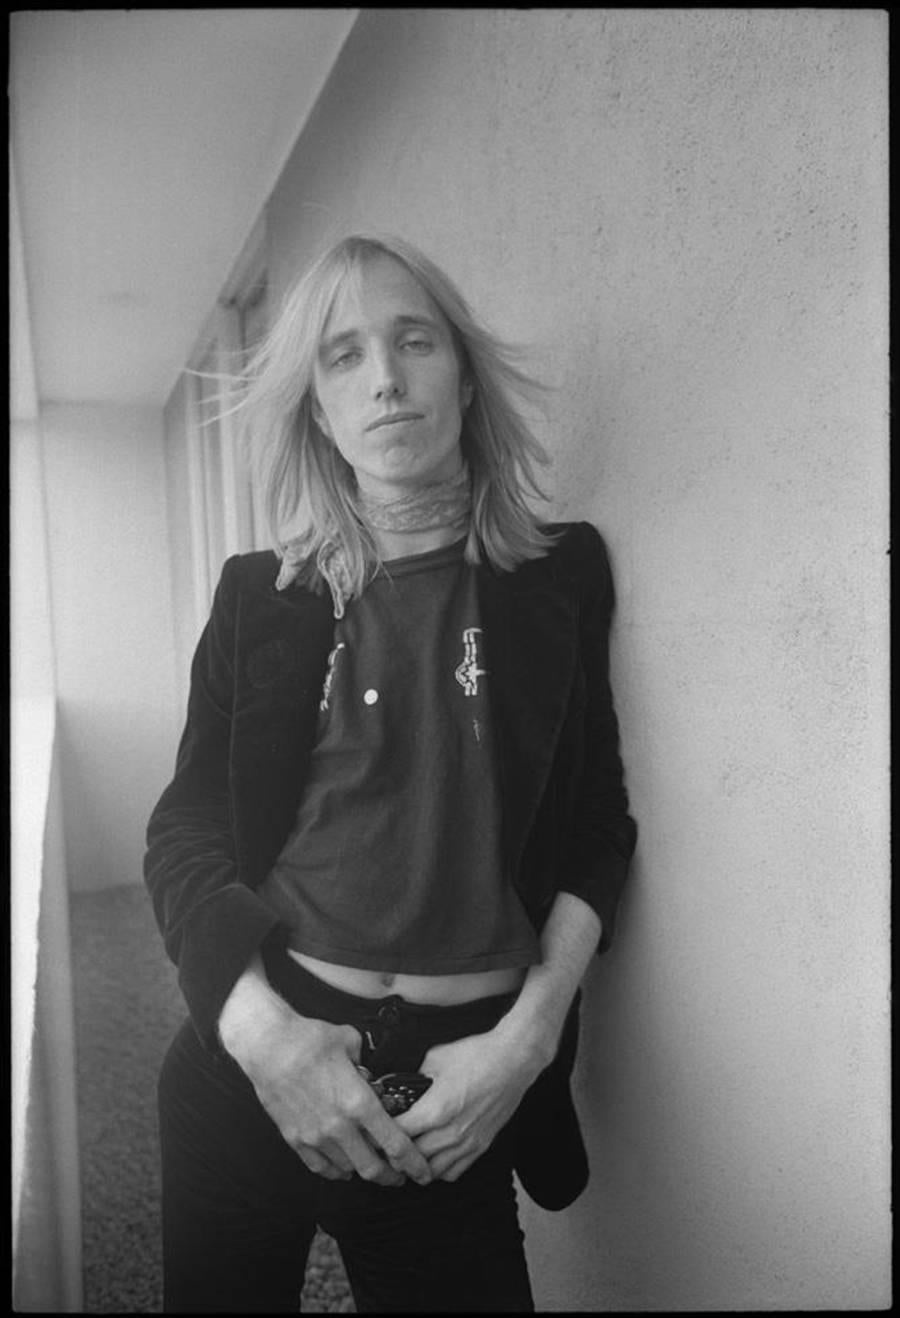 Michael Zagaris Portrait Photograph – Porträt von Tom Petty 